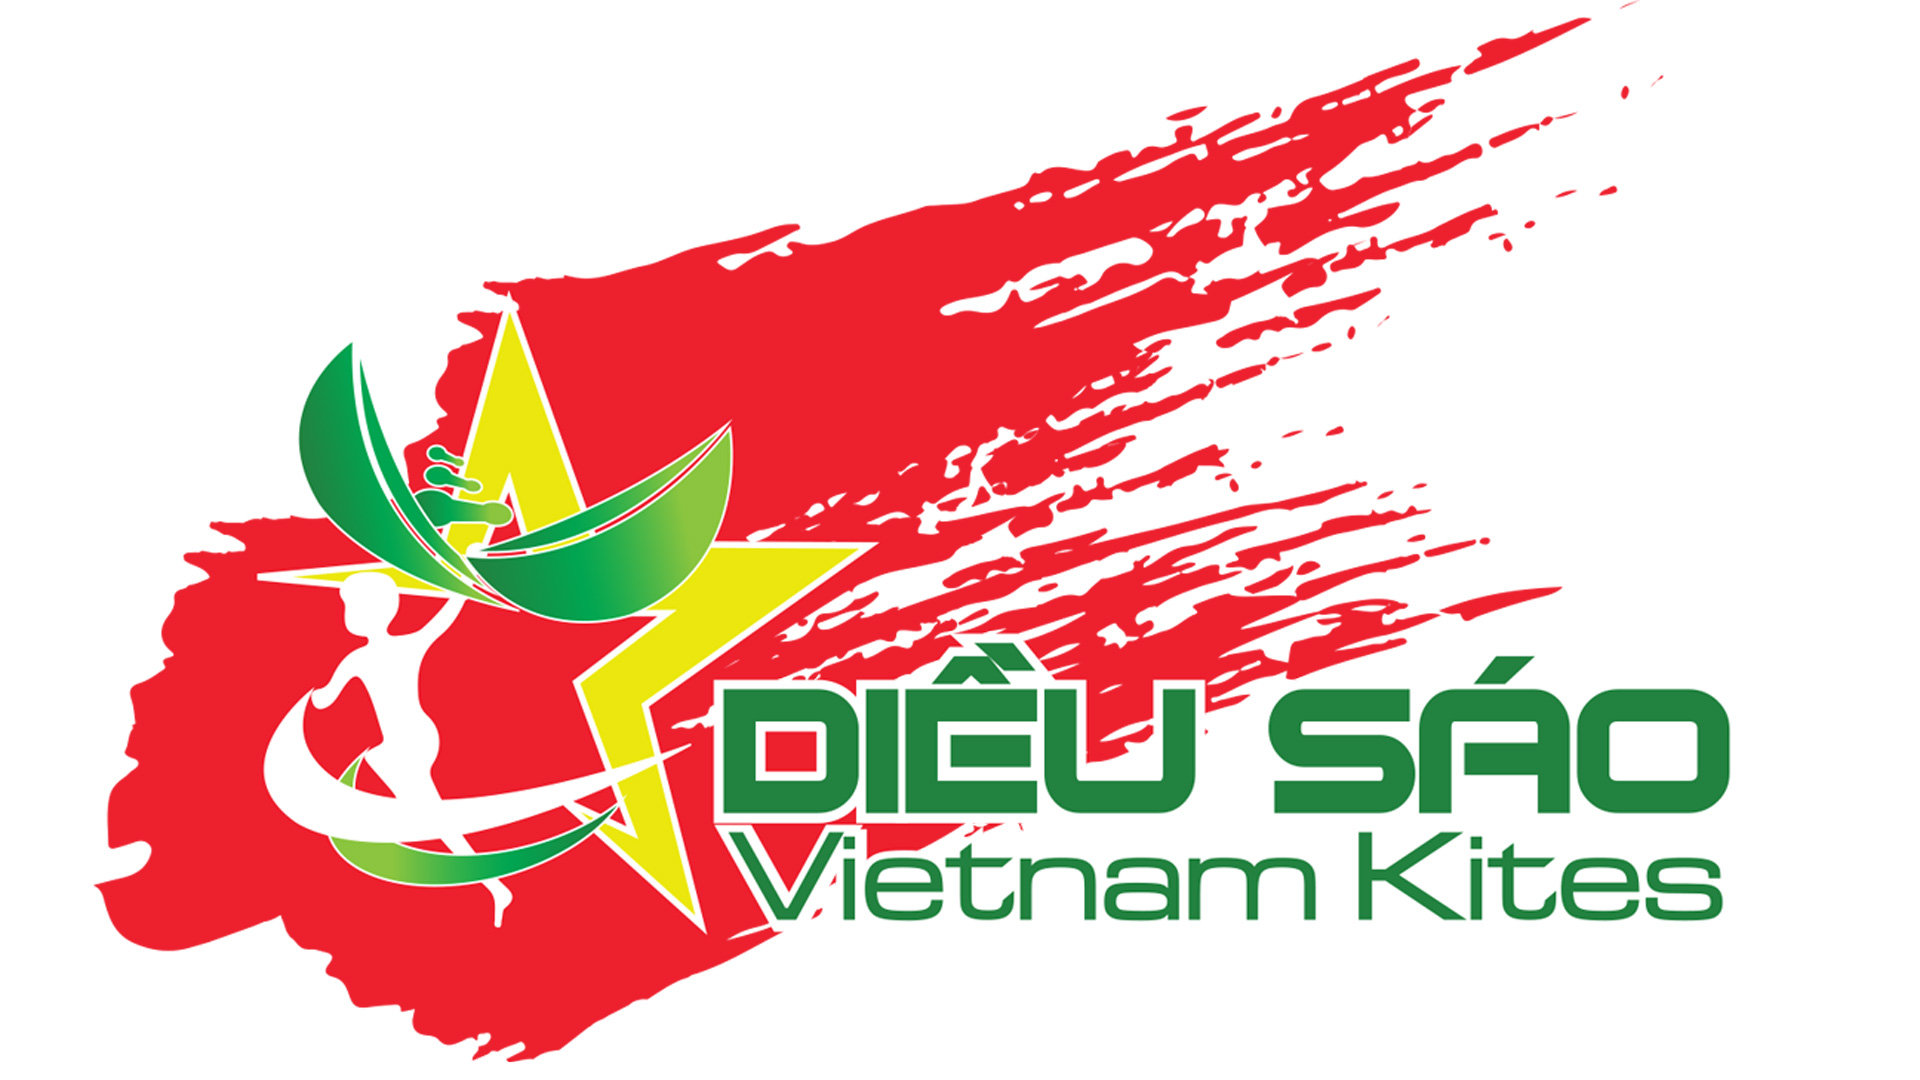 Vietnam Kites